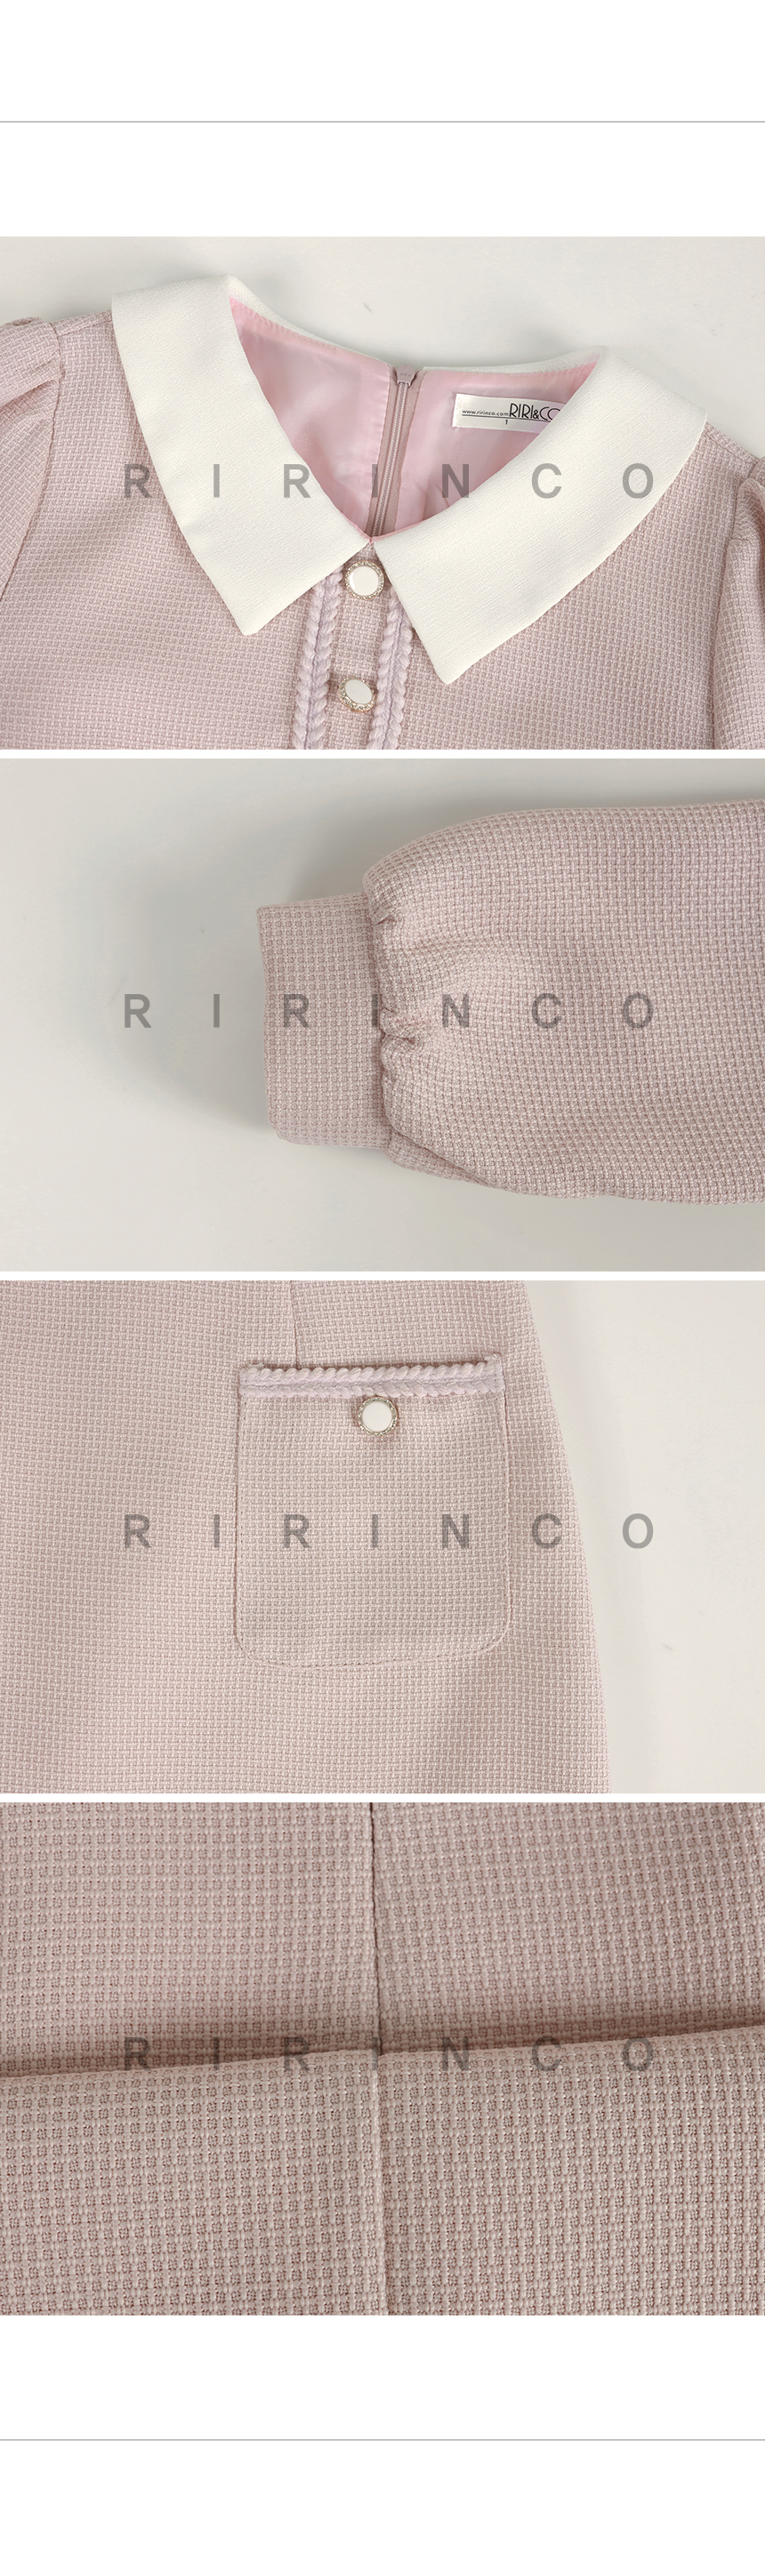 RIRINCO ツイード配色ポケットミニワンピース